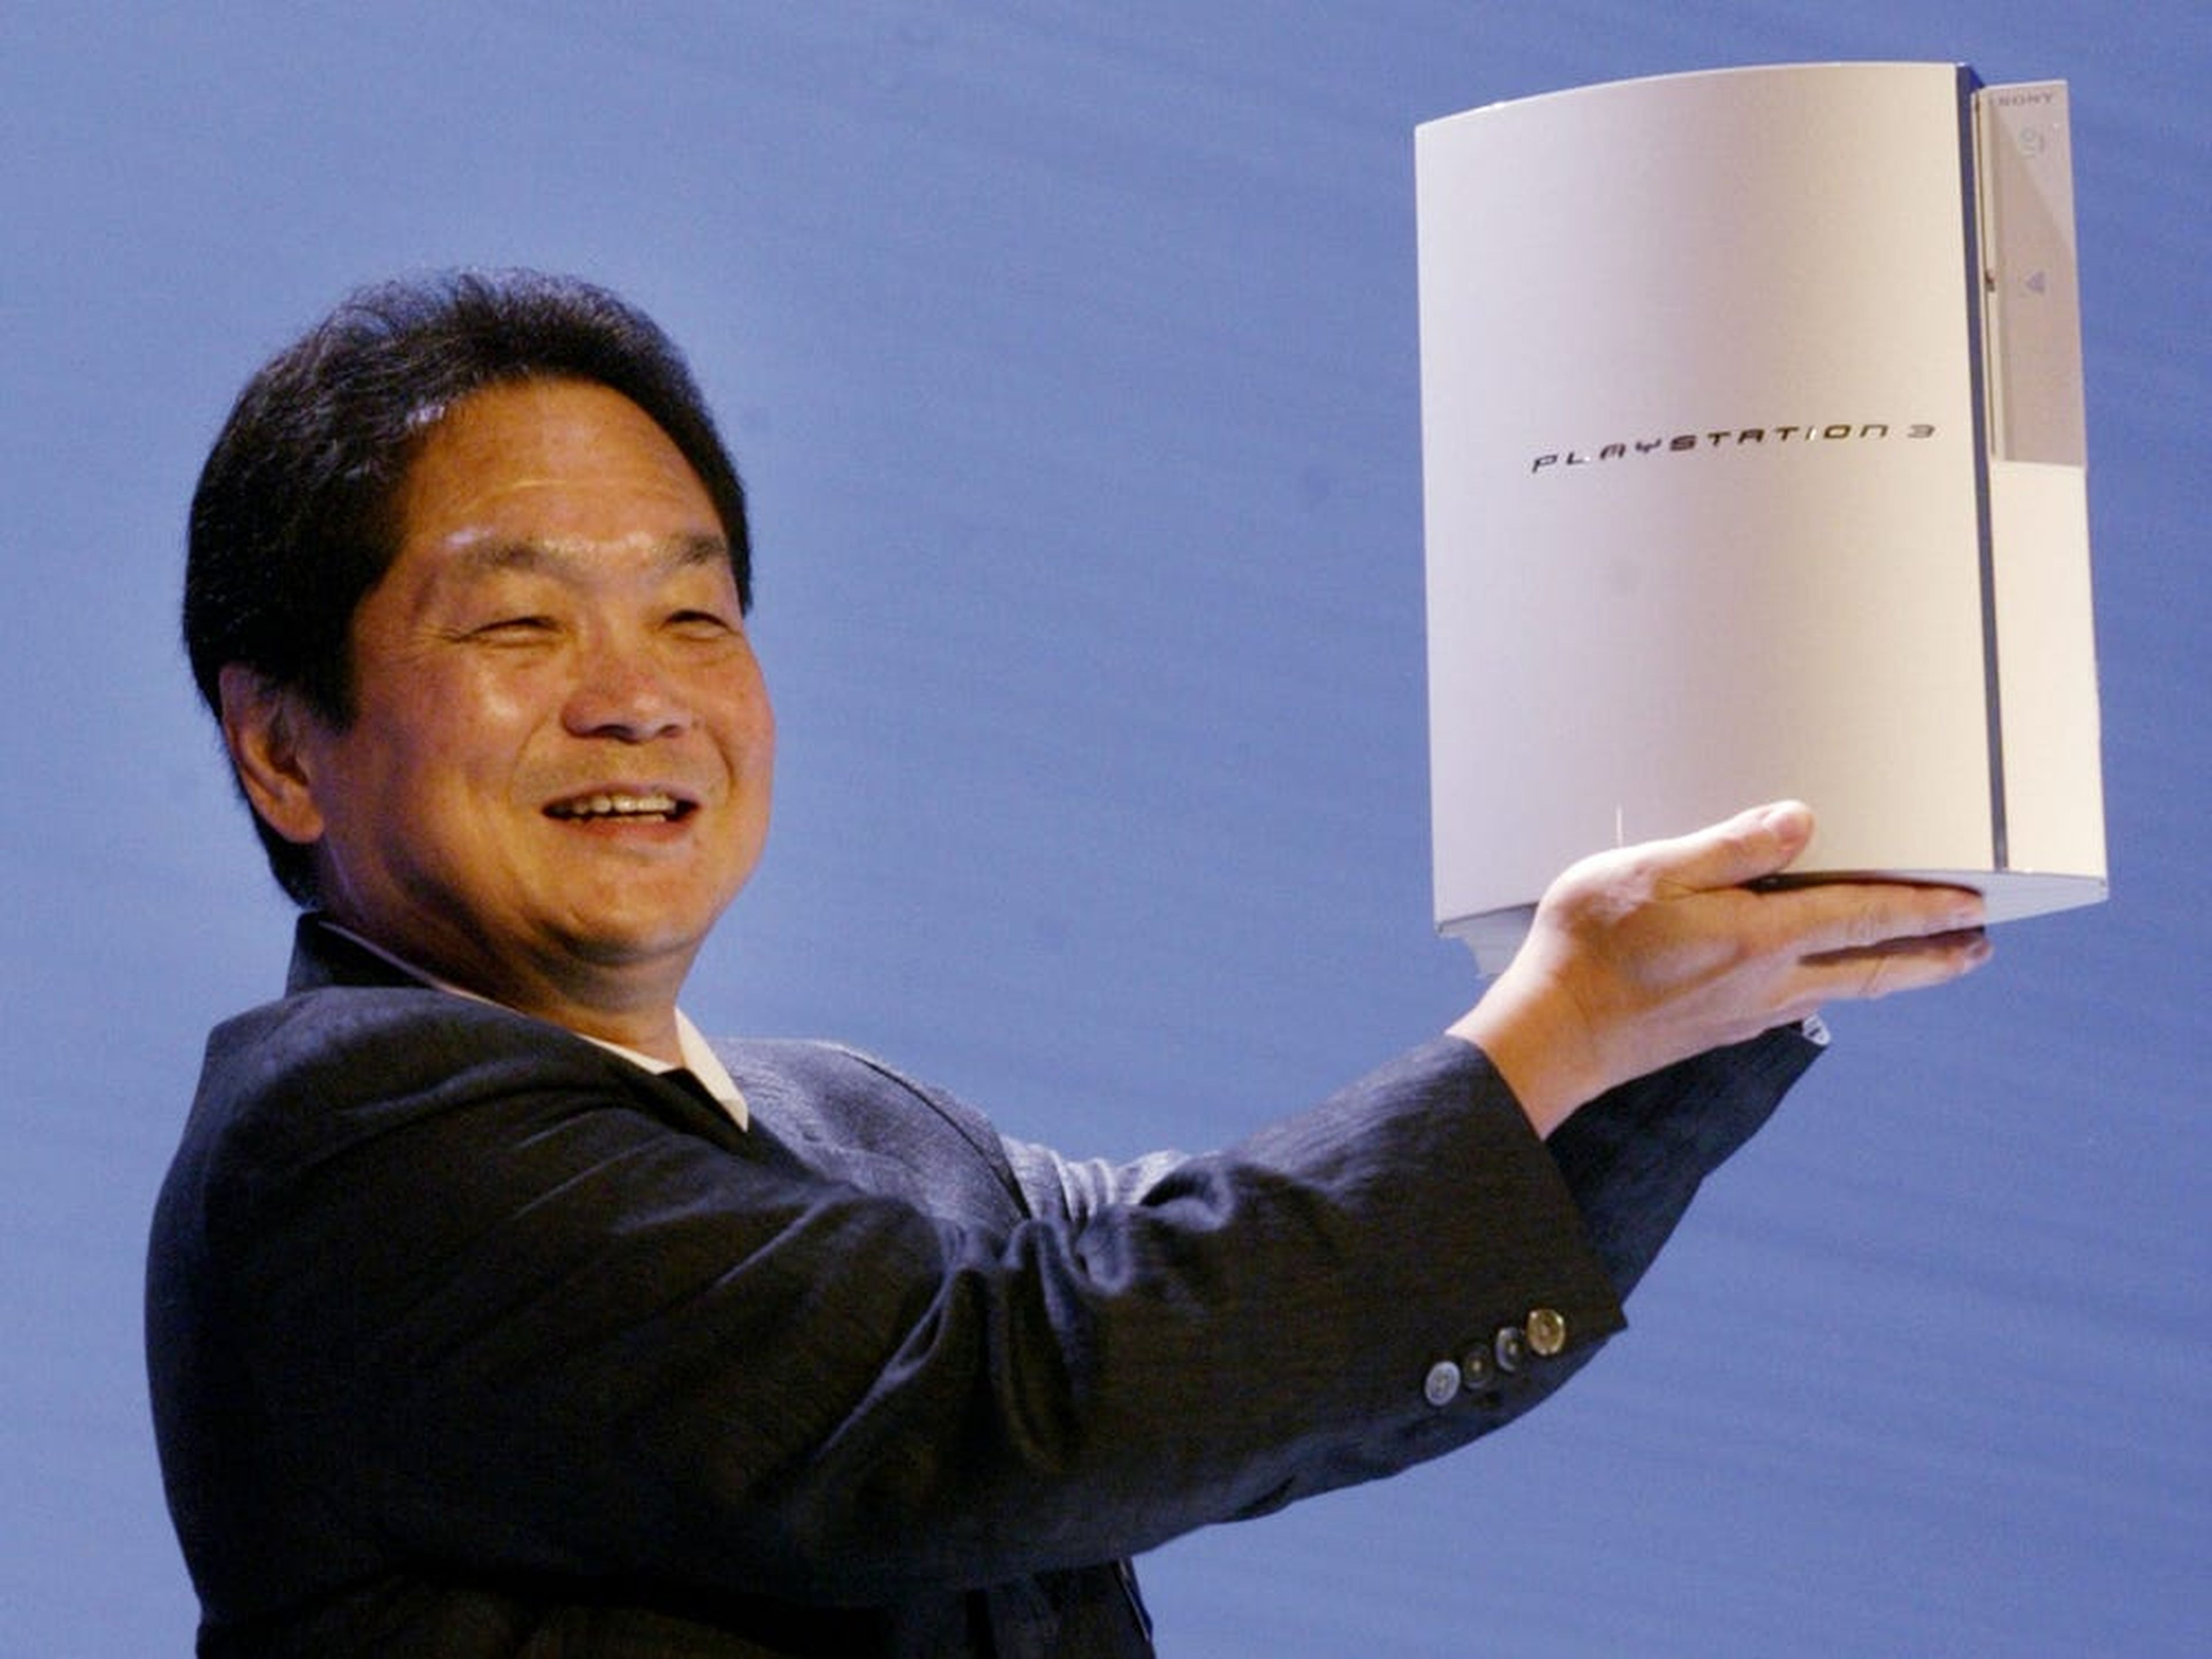 El inventor de la PlayStation, Ken Kutaragi, fotografiado en 2005, sostiene una PlayStation 3.